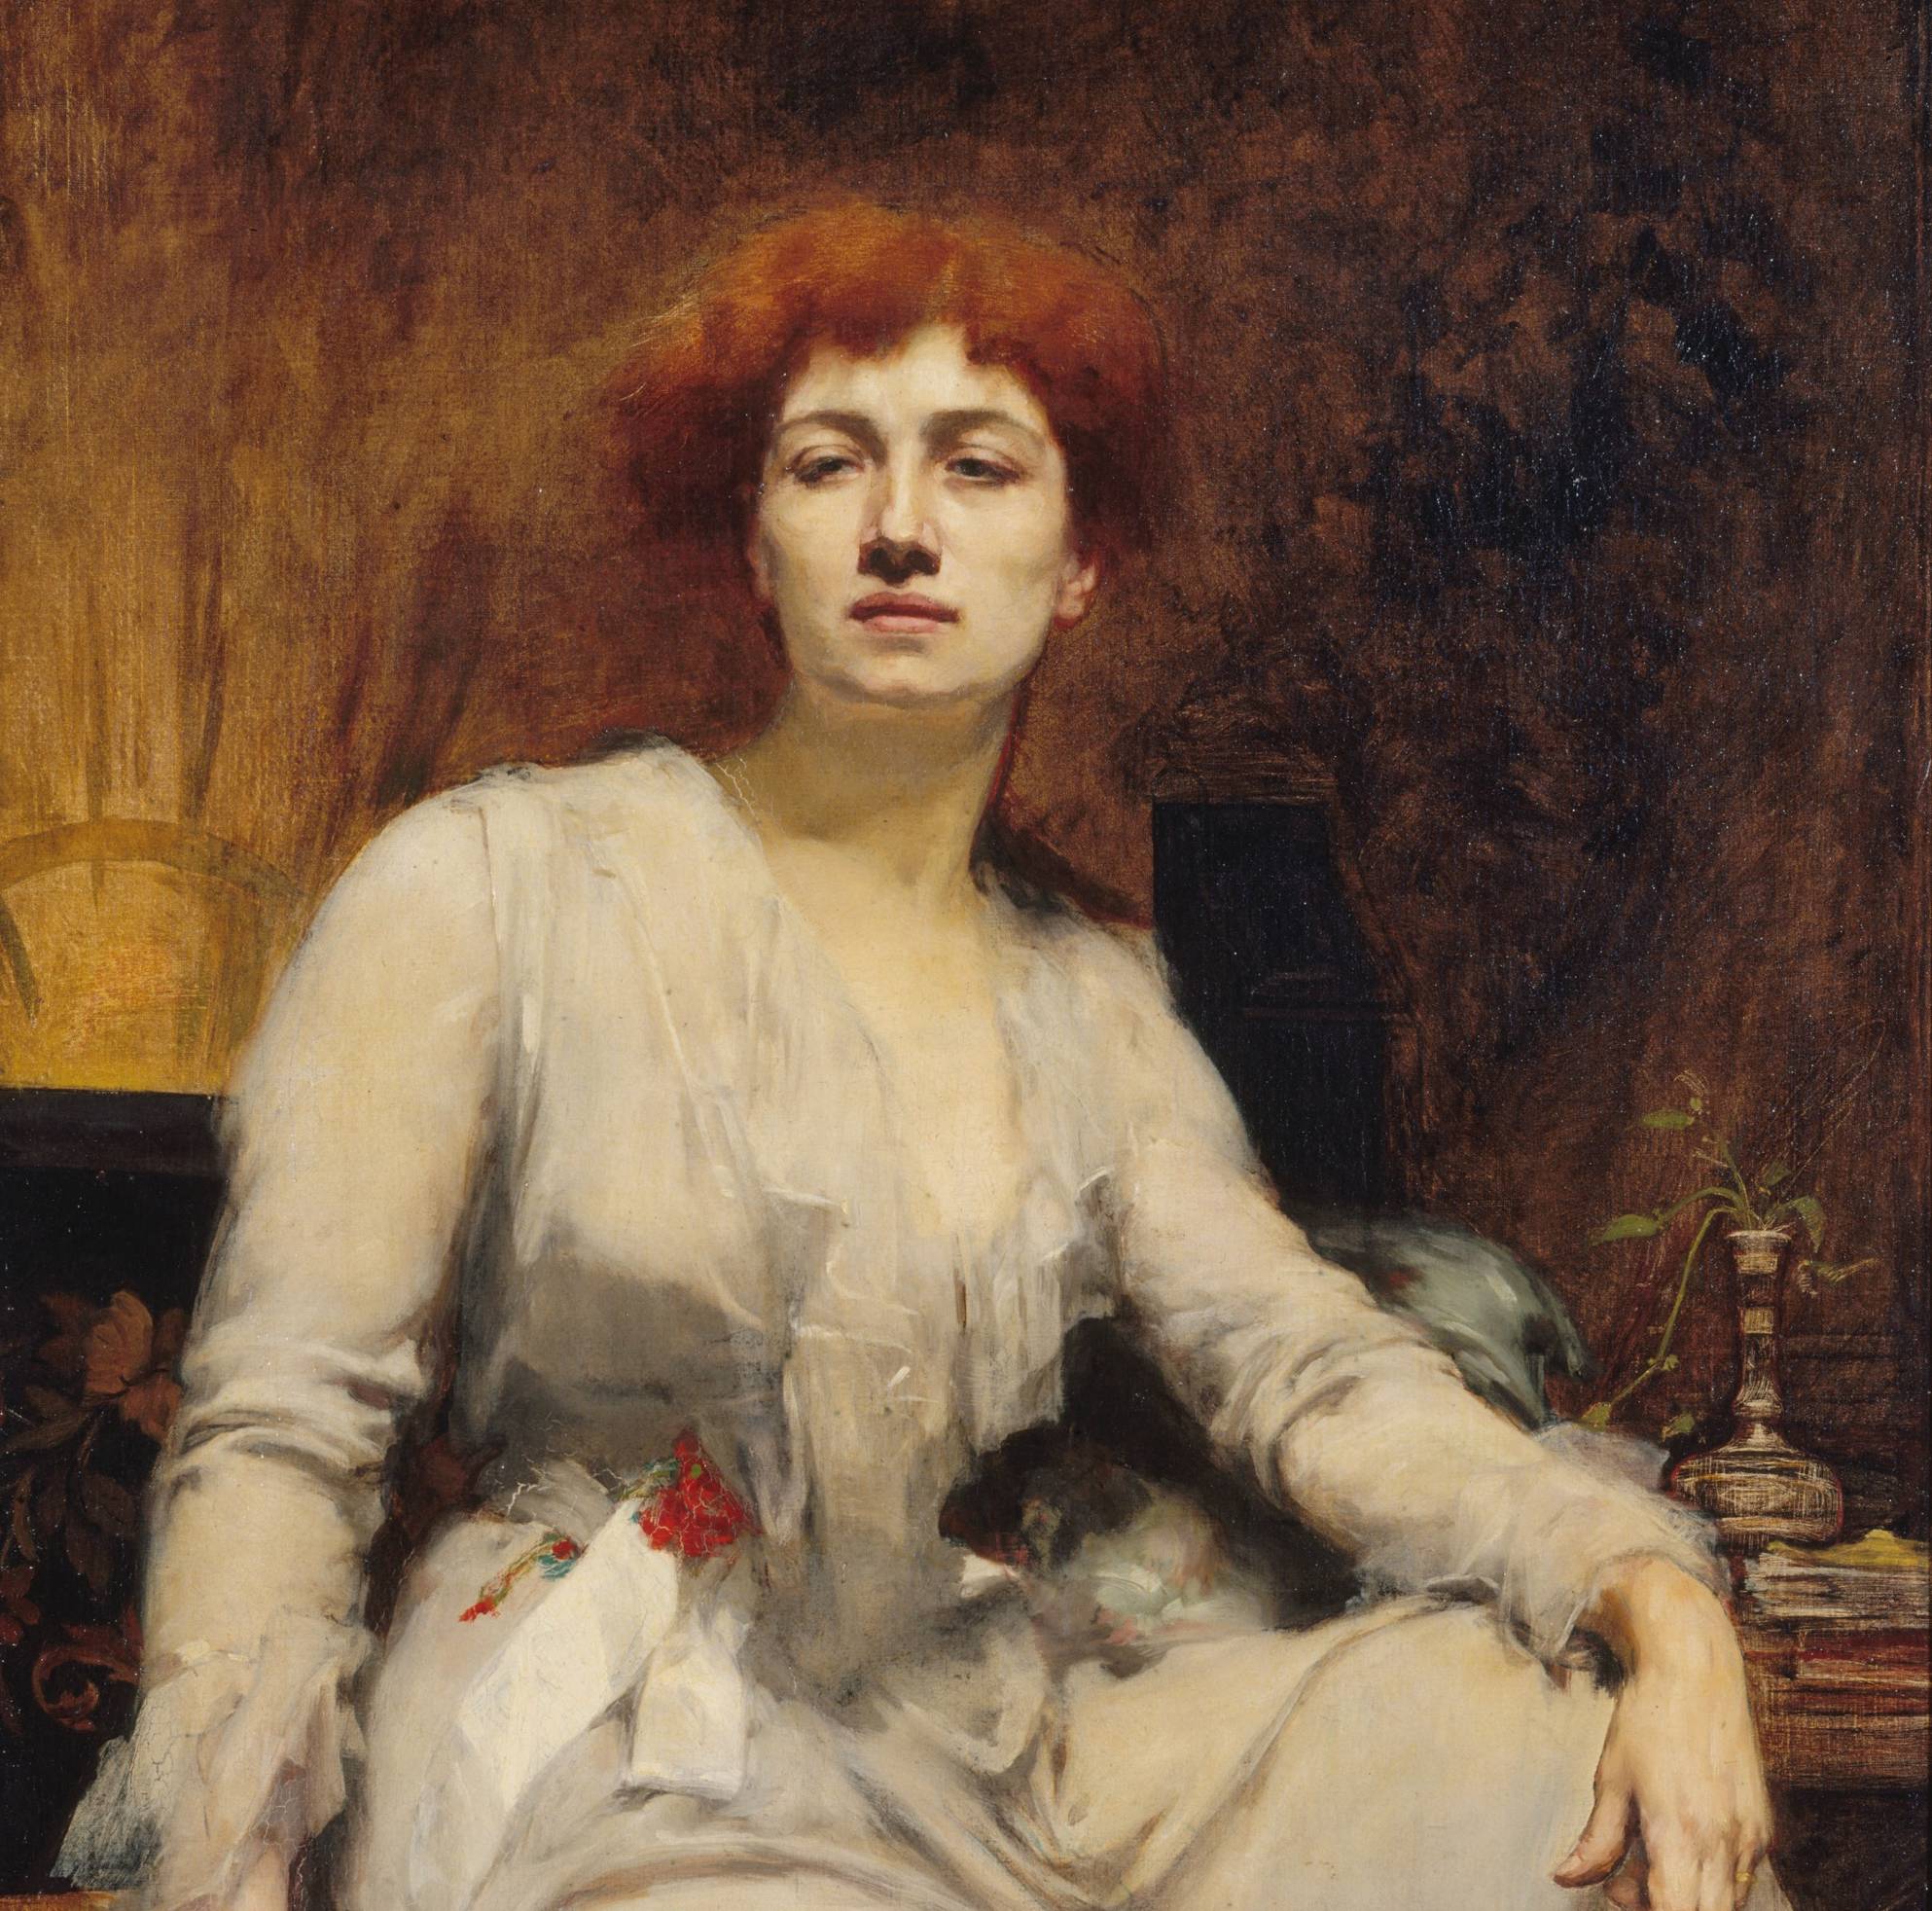 Portrait de Caroline Remy dite Severine par Amelie Beaury-Saurel (1855-1929), 1893 - source : musée Carnavalet – Histoire de Paris